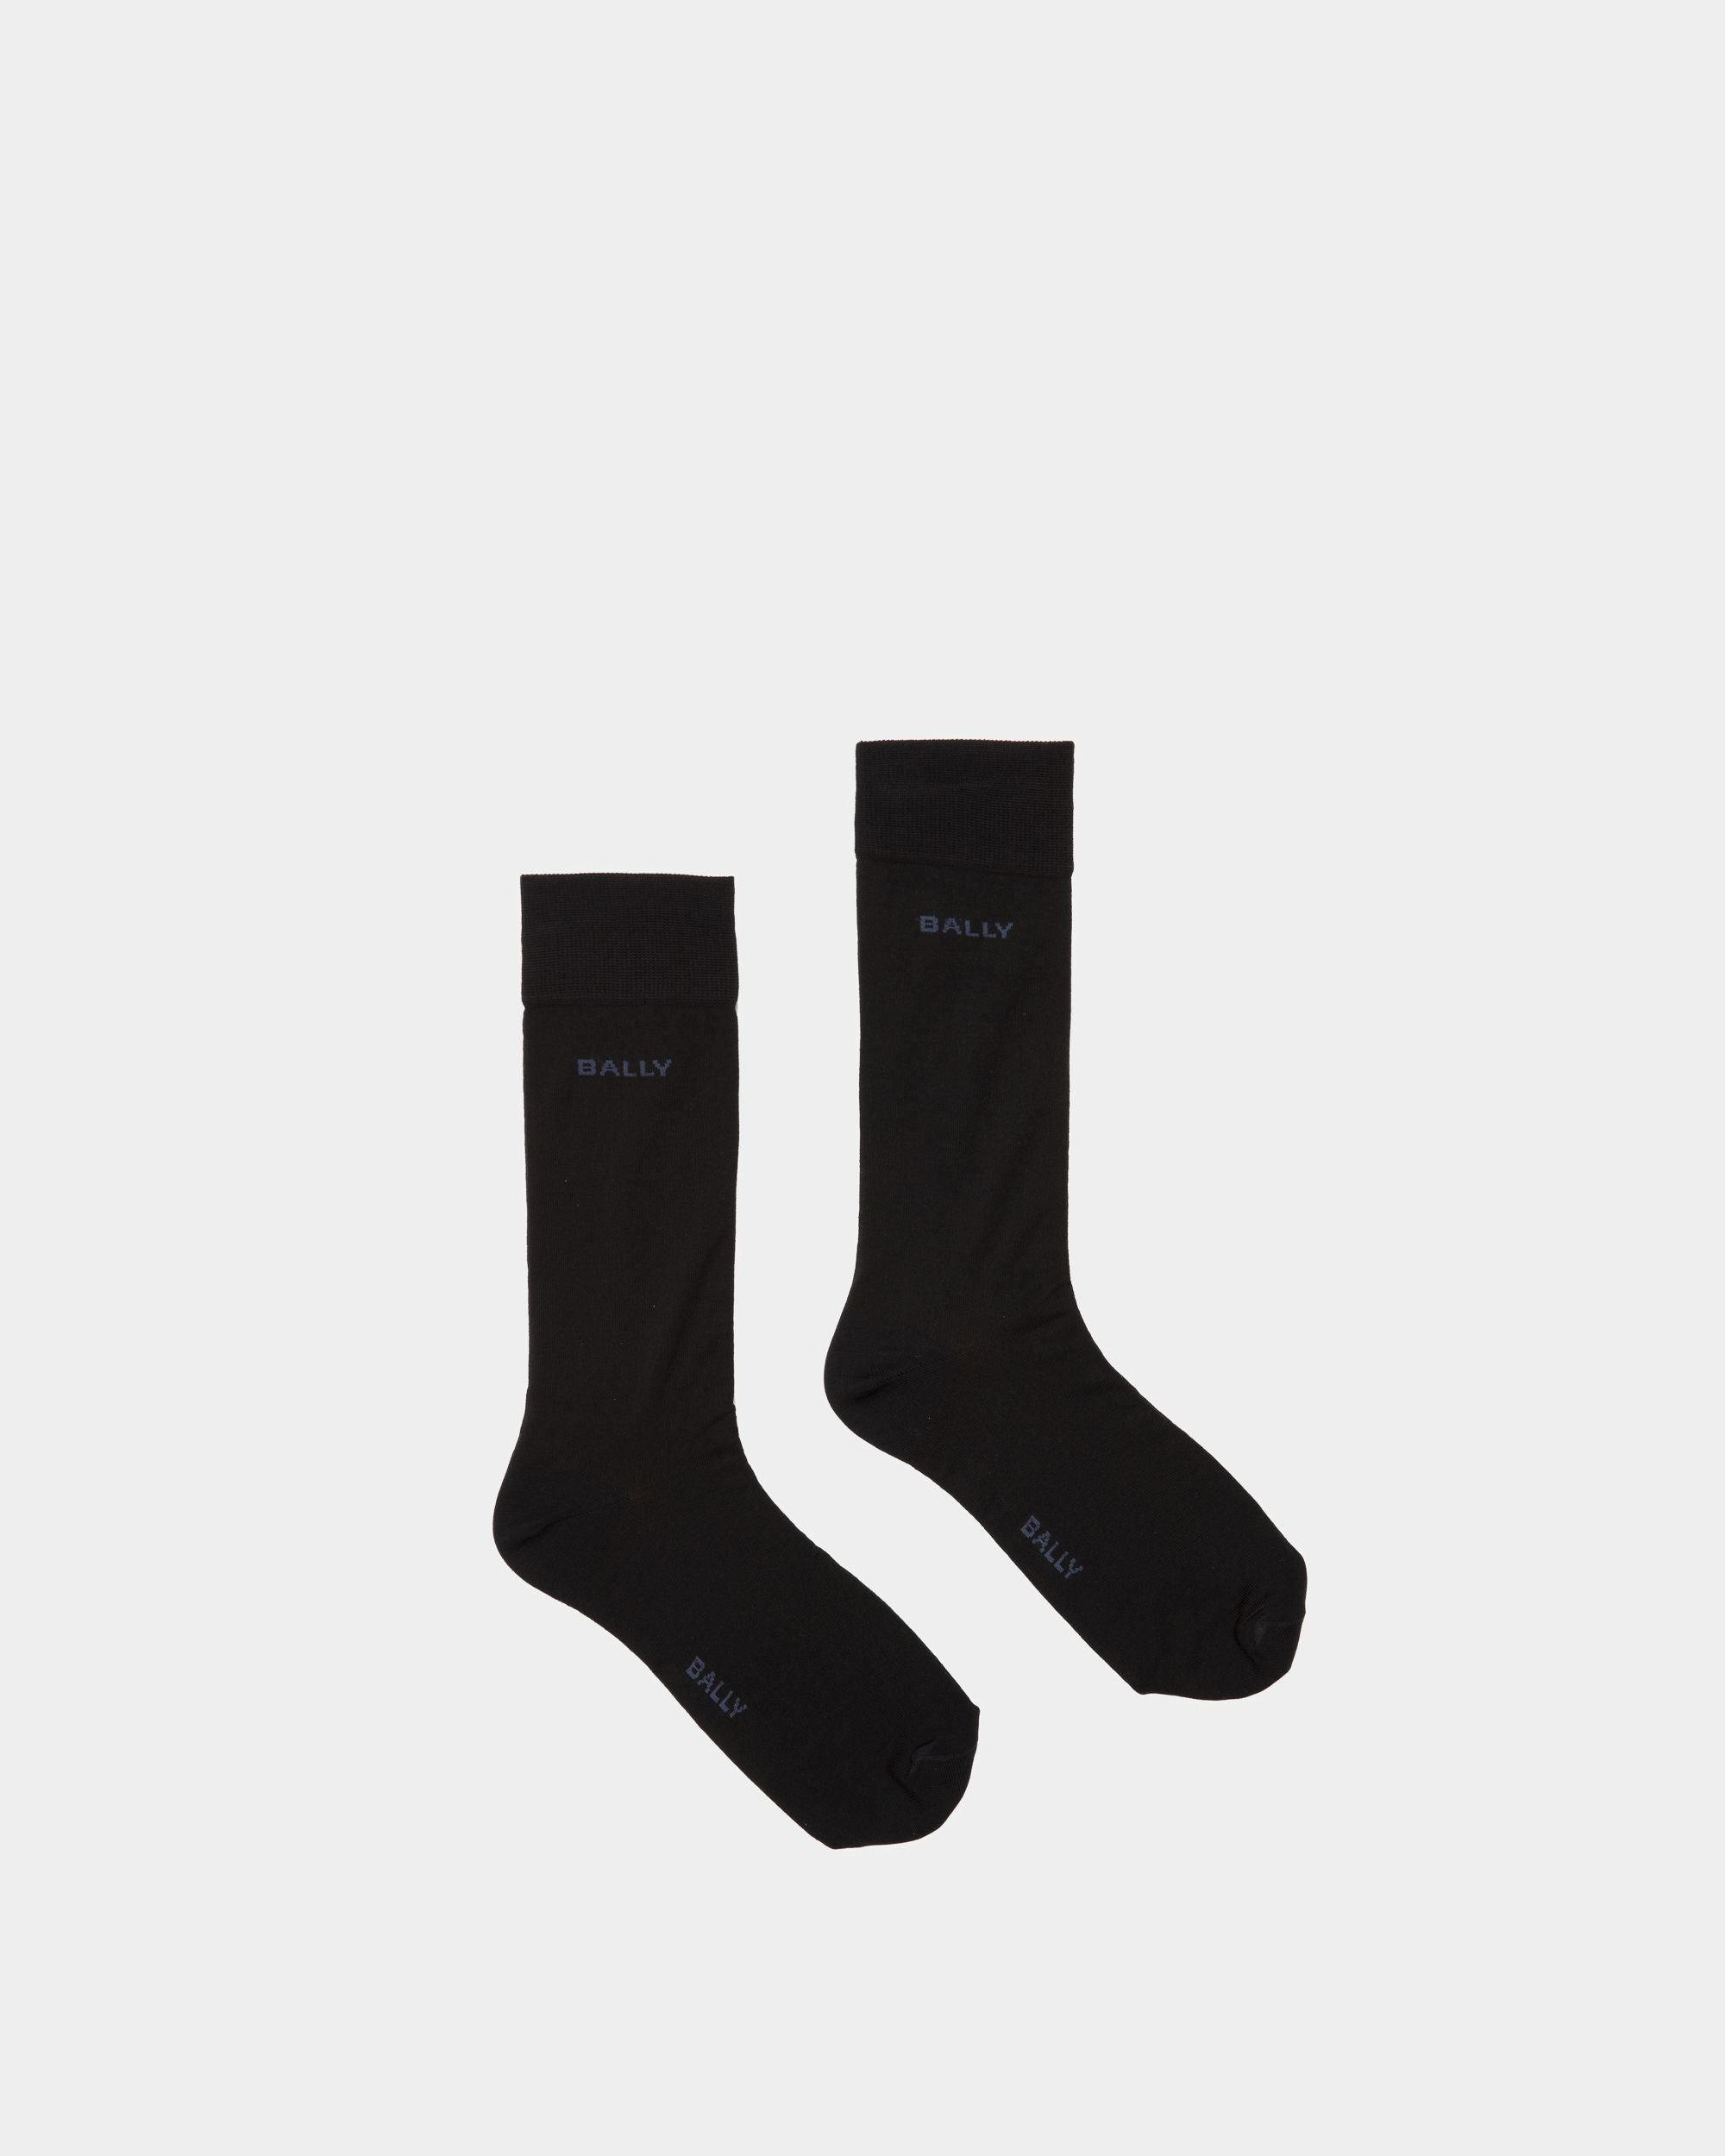 Chaussettes à rayures avec logo | Chaussettes pour homme | Coton chiné couleur encre et indigo | Bally | Still Life Haut